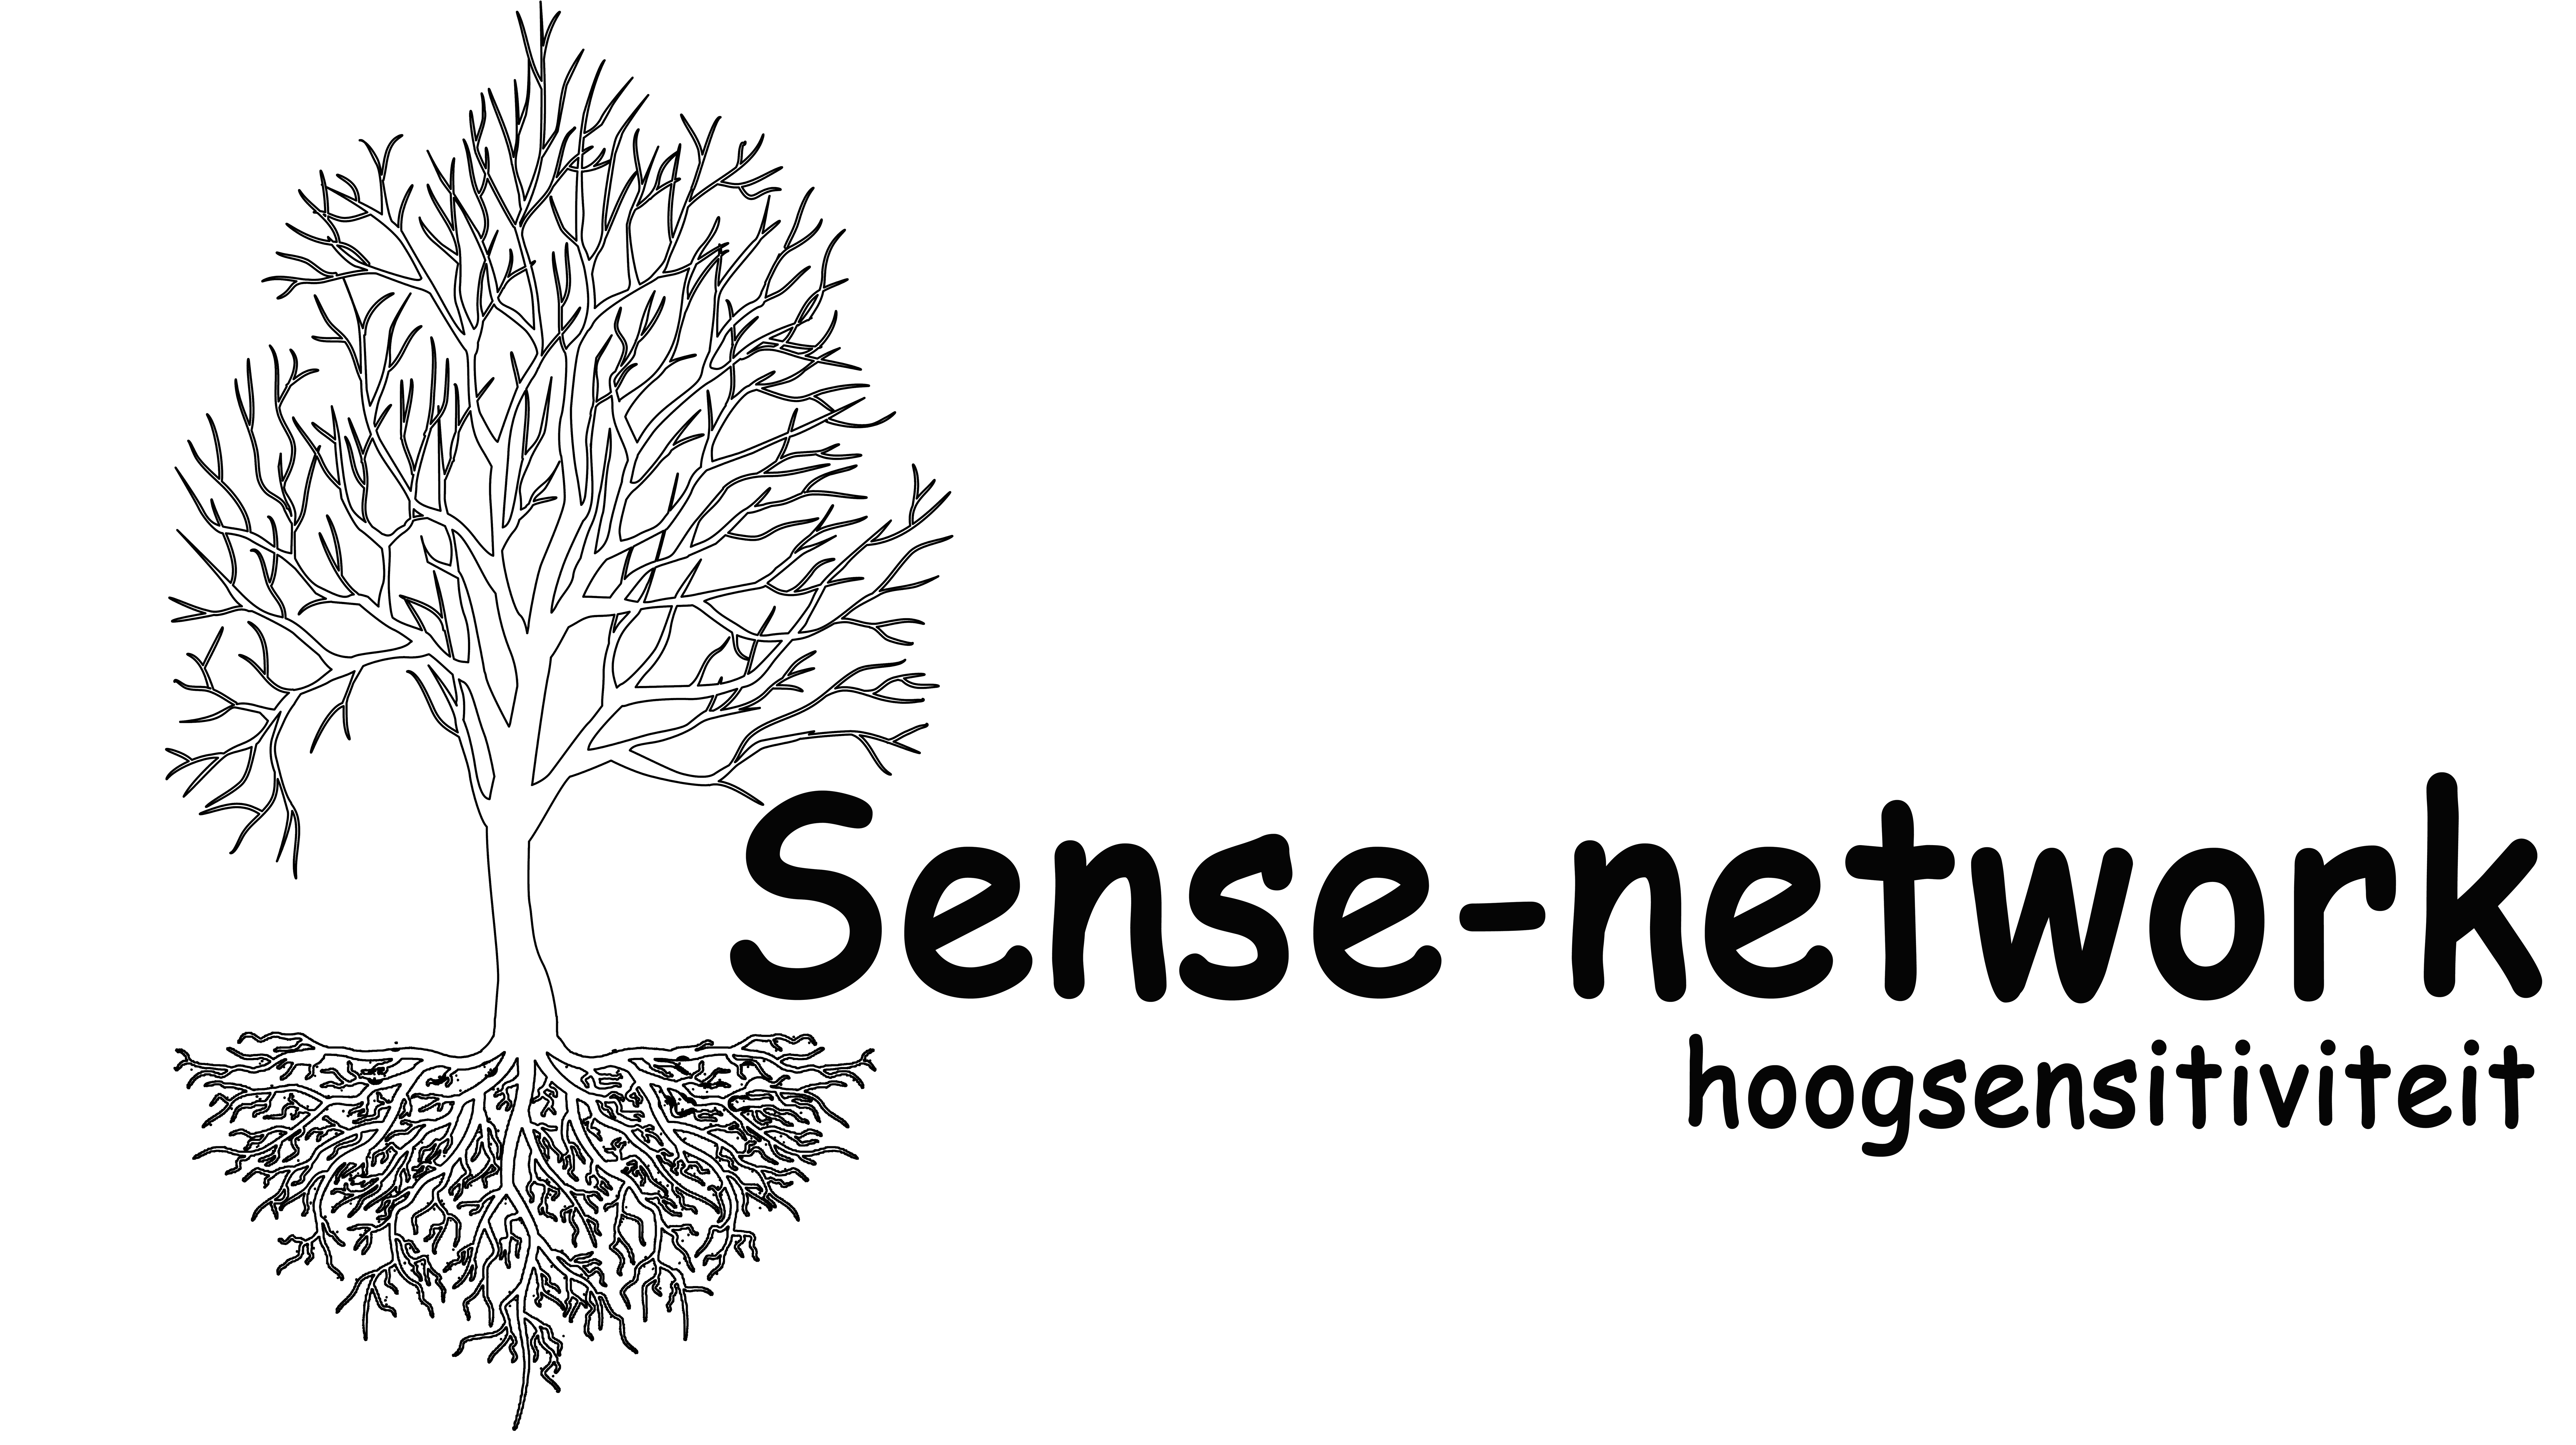 Sense-network